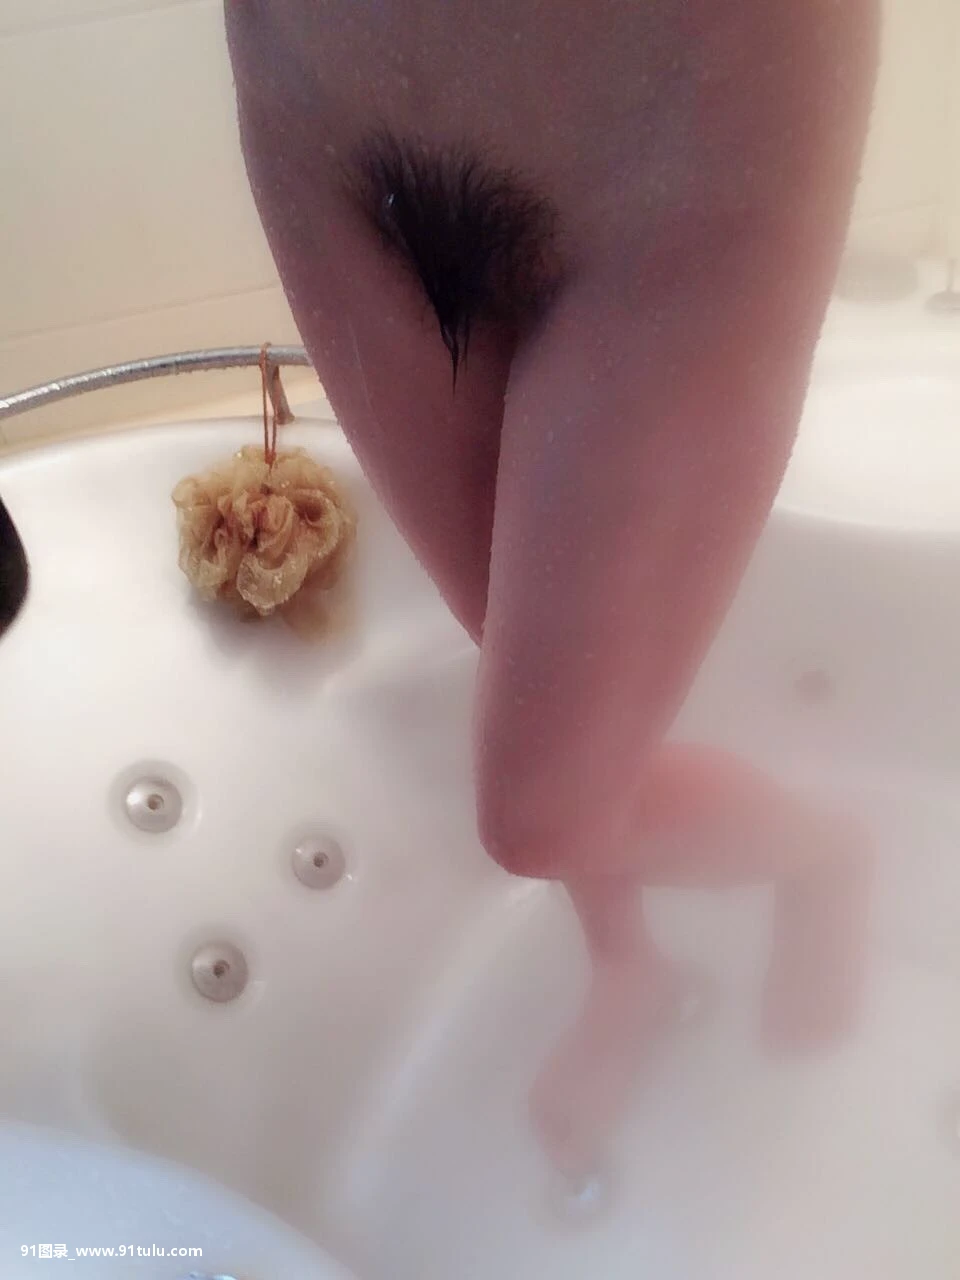 美女洗澡自拍-[15P]自拍,15P,洗澡,美女,自拍,洗澡